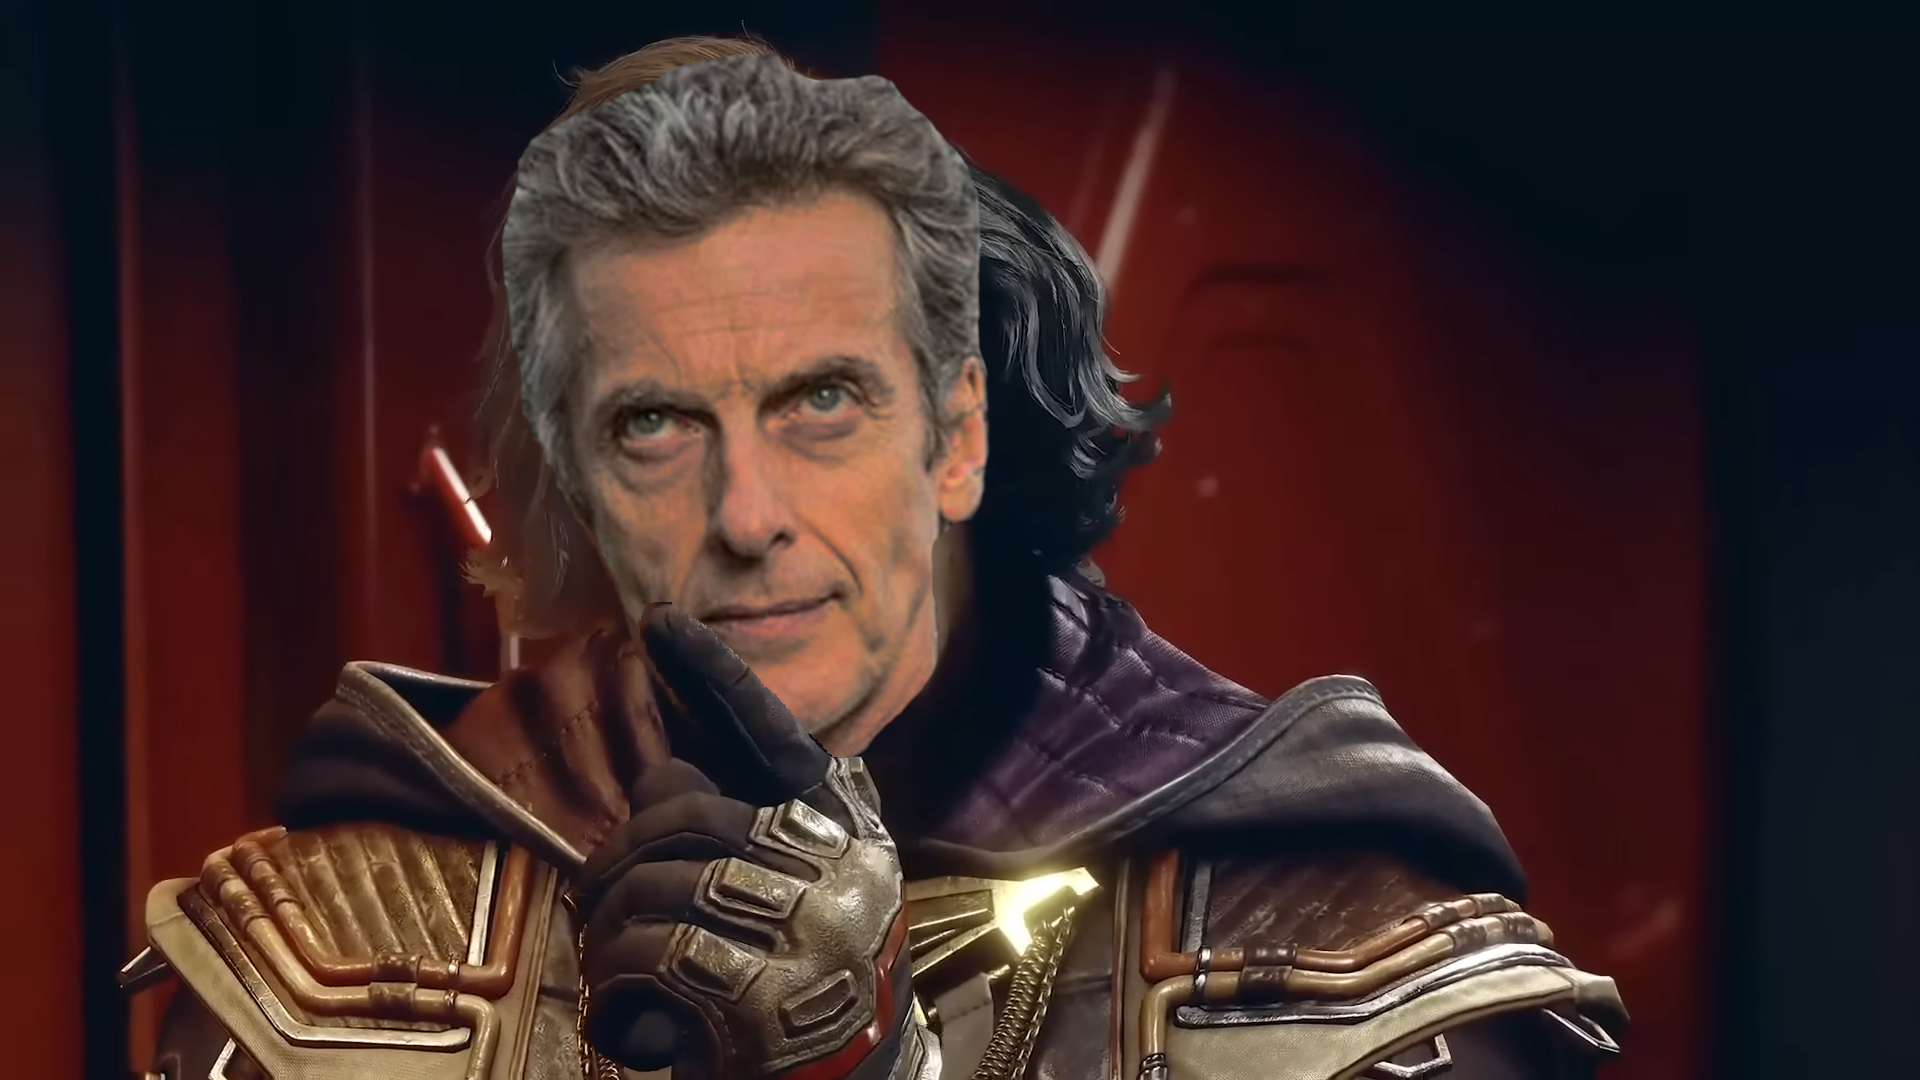 Un streenshot de Starfield édité remplaçant un personnage par Peter Capaldi dans le rôle du Docteur